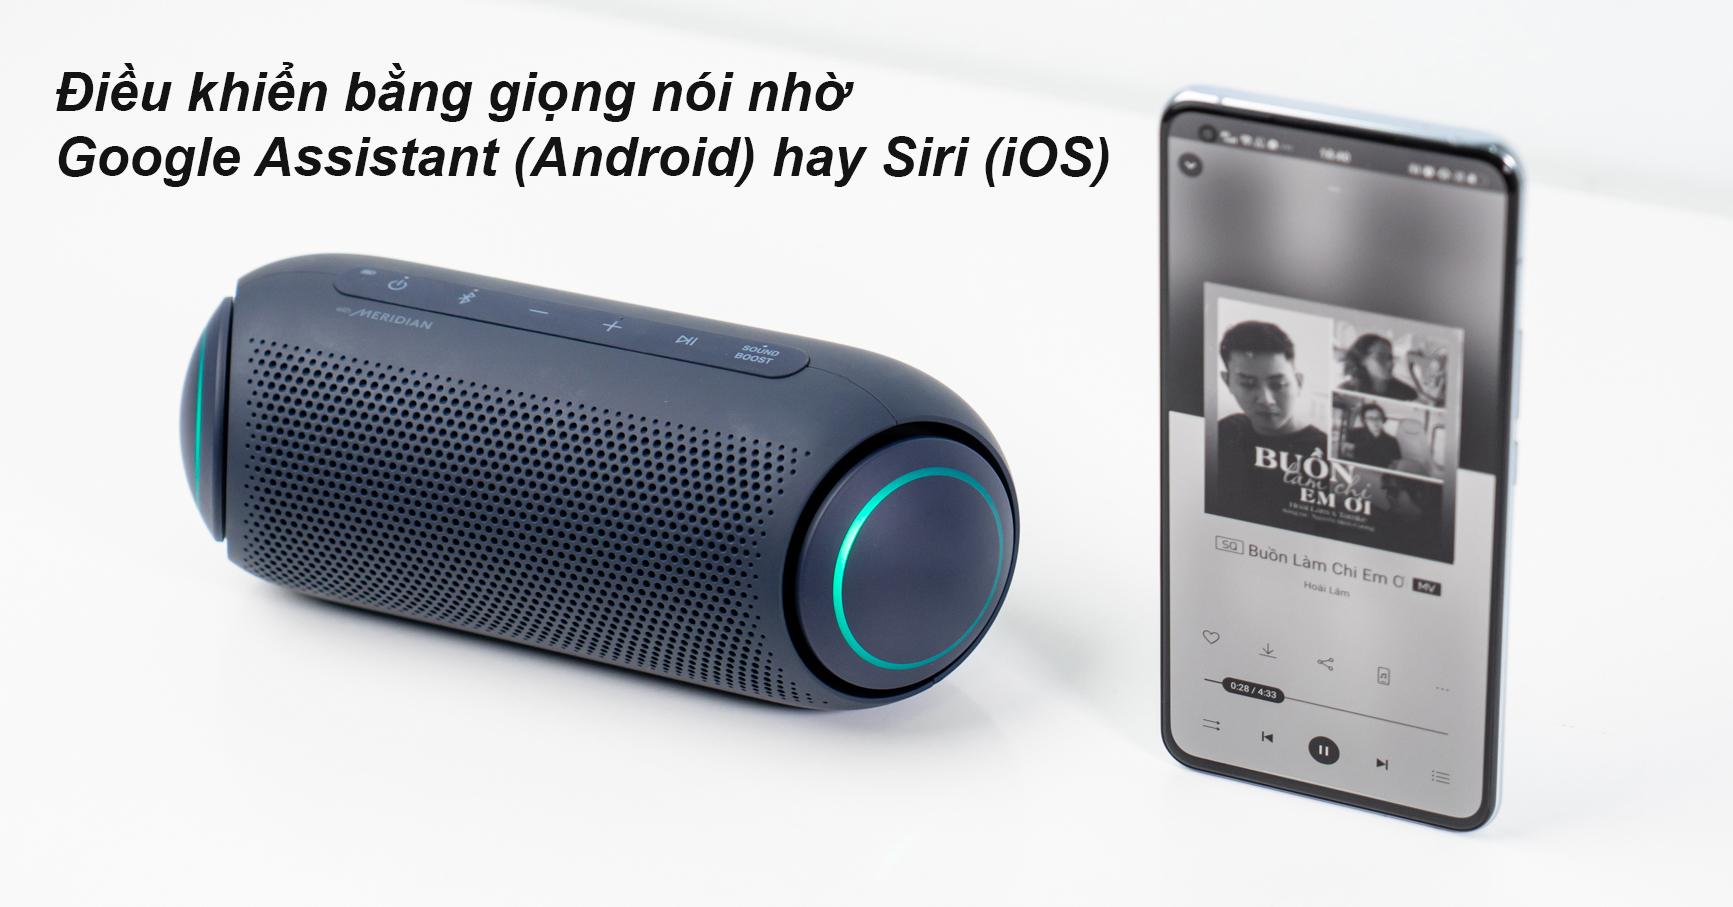 Loa Bluetooth LG PL5 (Xanh Đen) | Điều khiển bằng giọng nói 